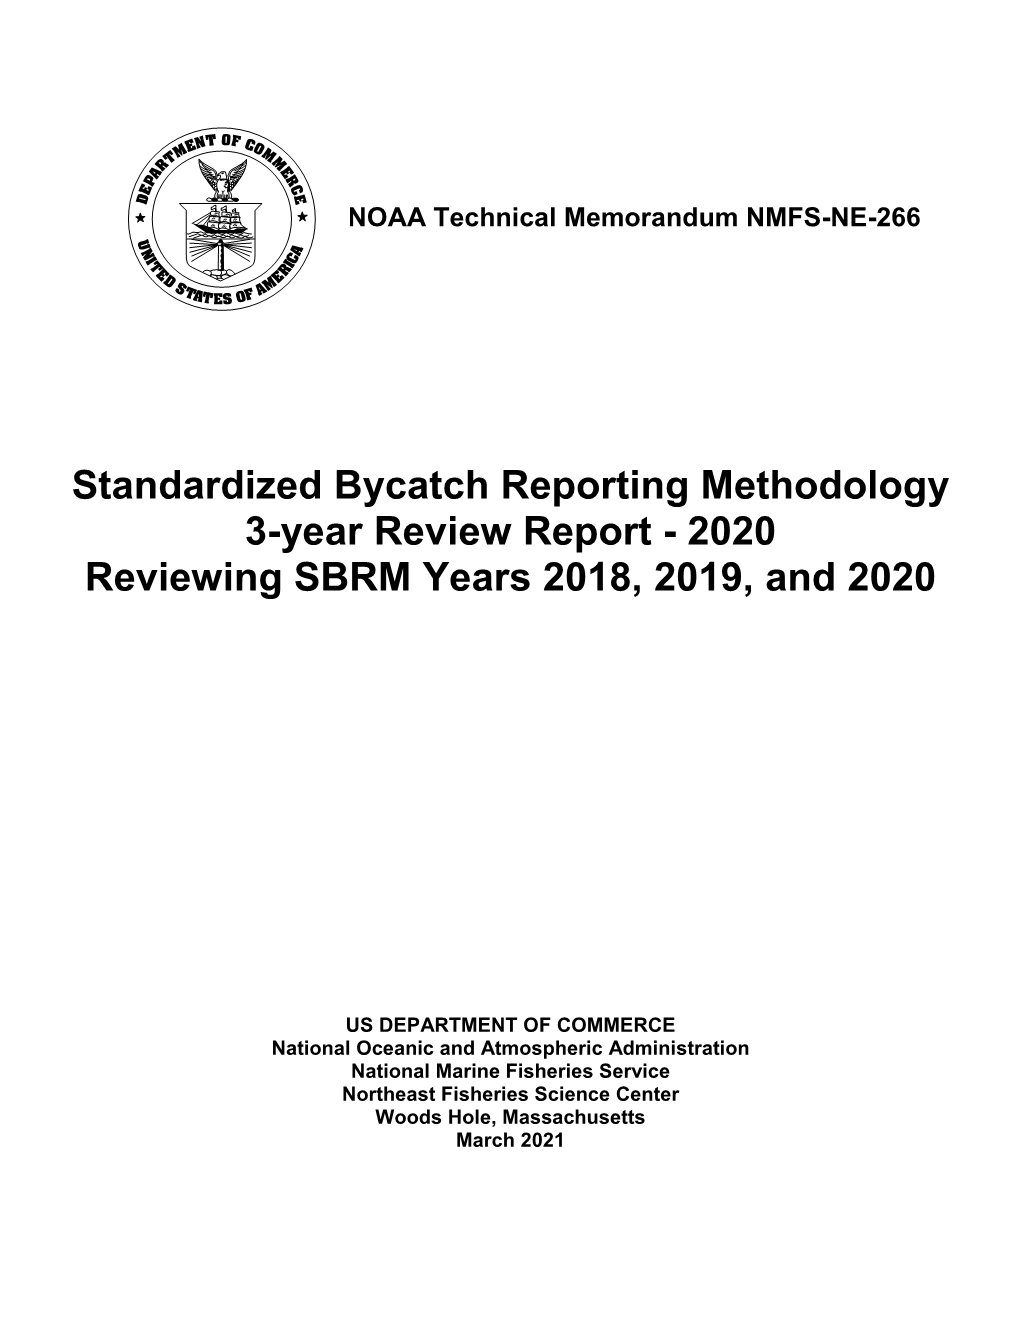 NOAA Tech Memo NMFS NE. 257; 195 P